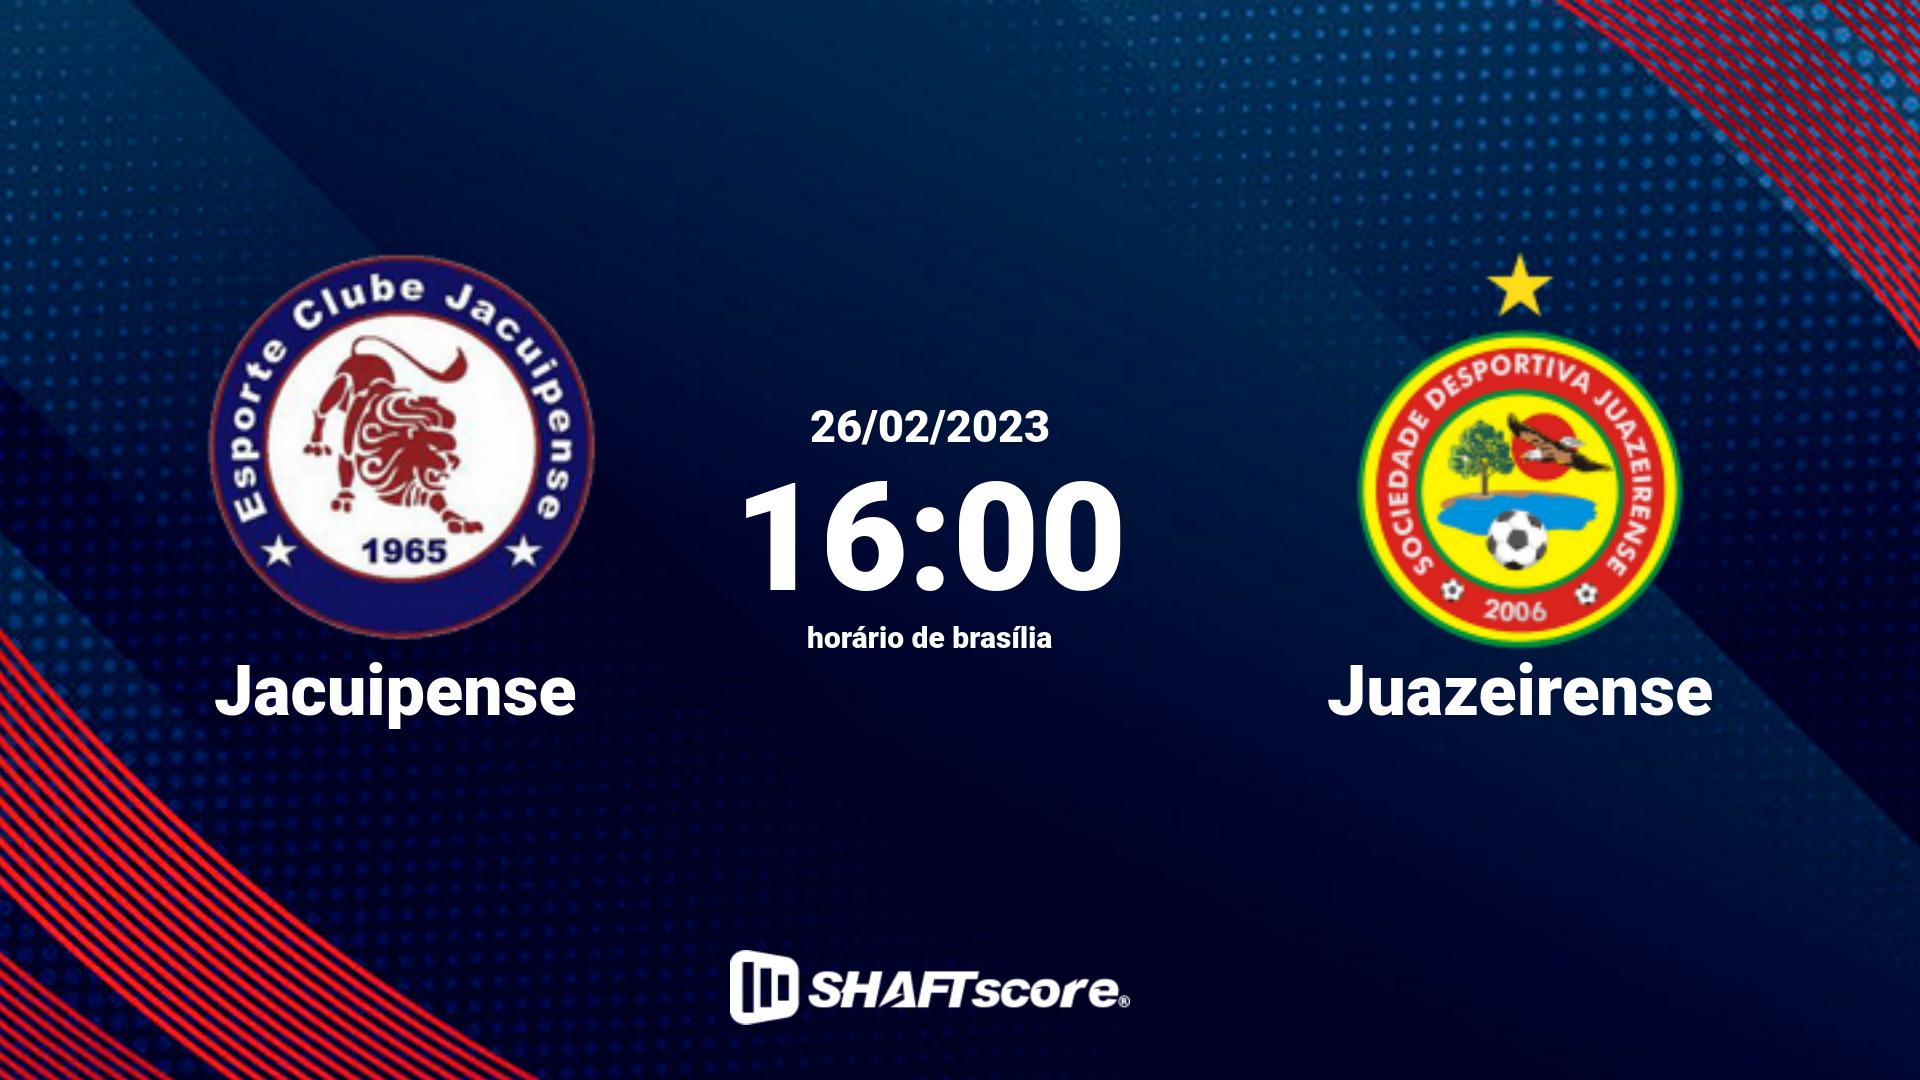 Estatísticas do jogo Jacuipense vs Juazeirense 26.02 16:00